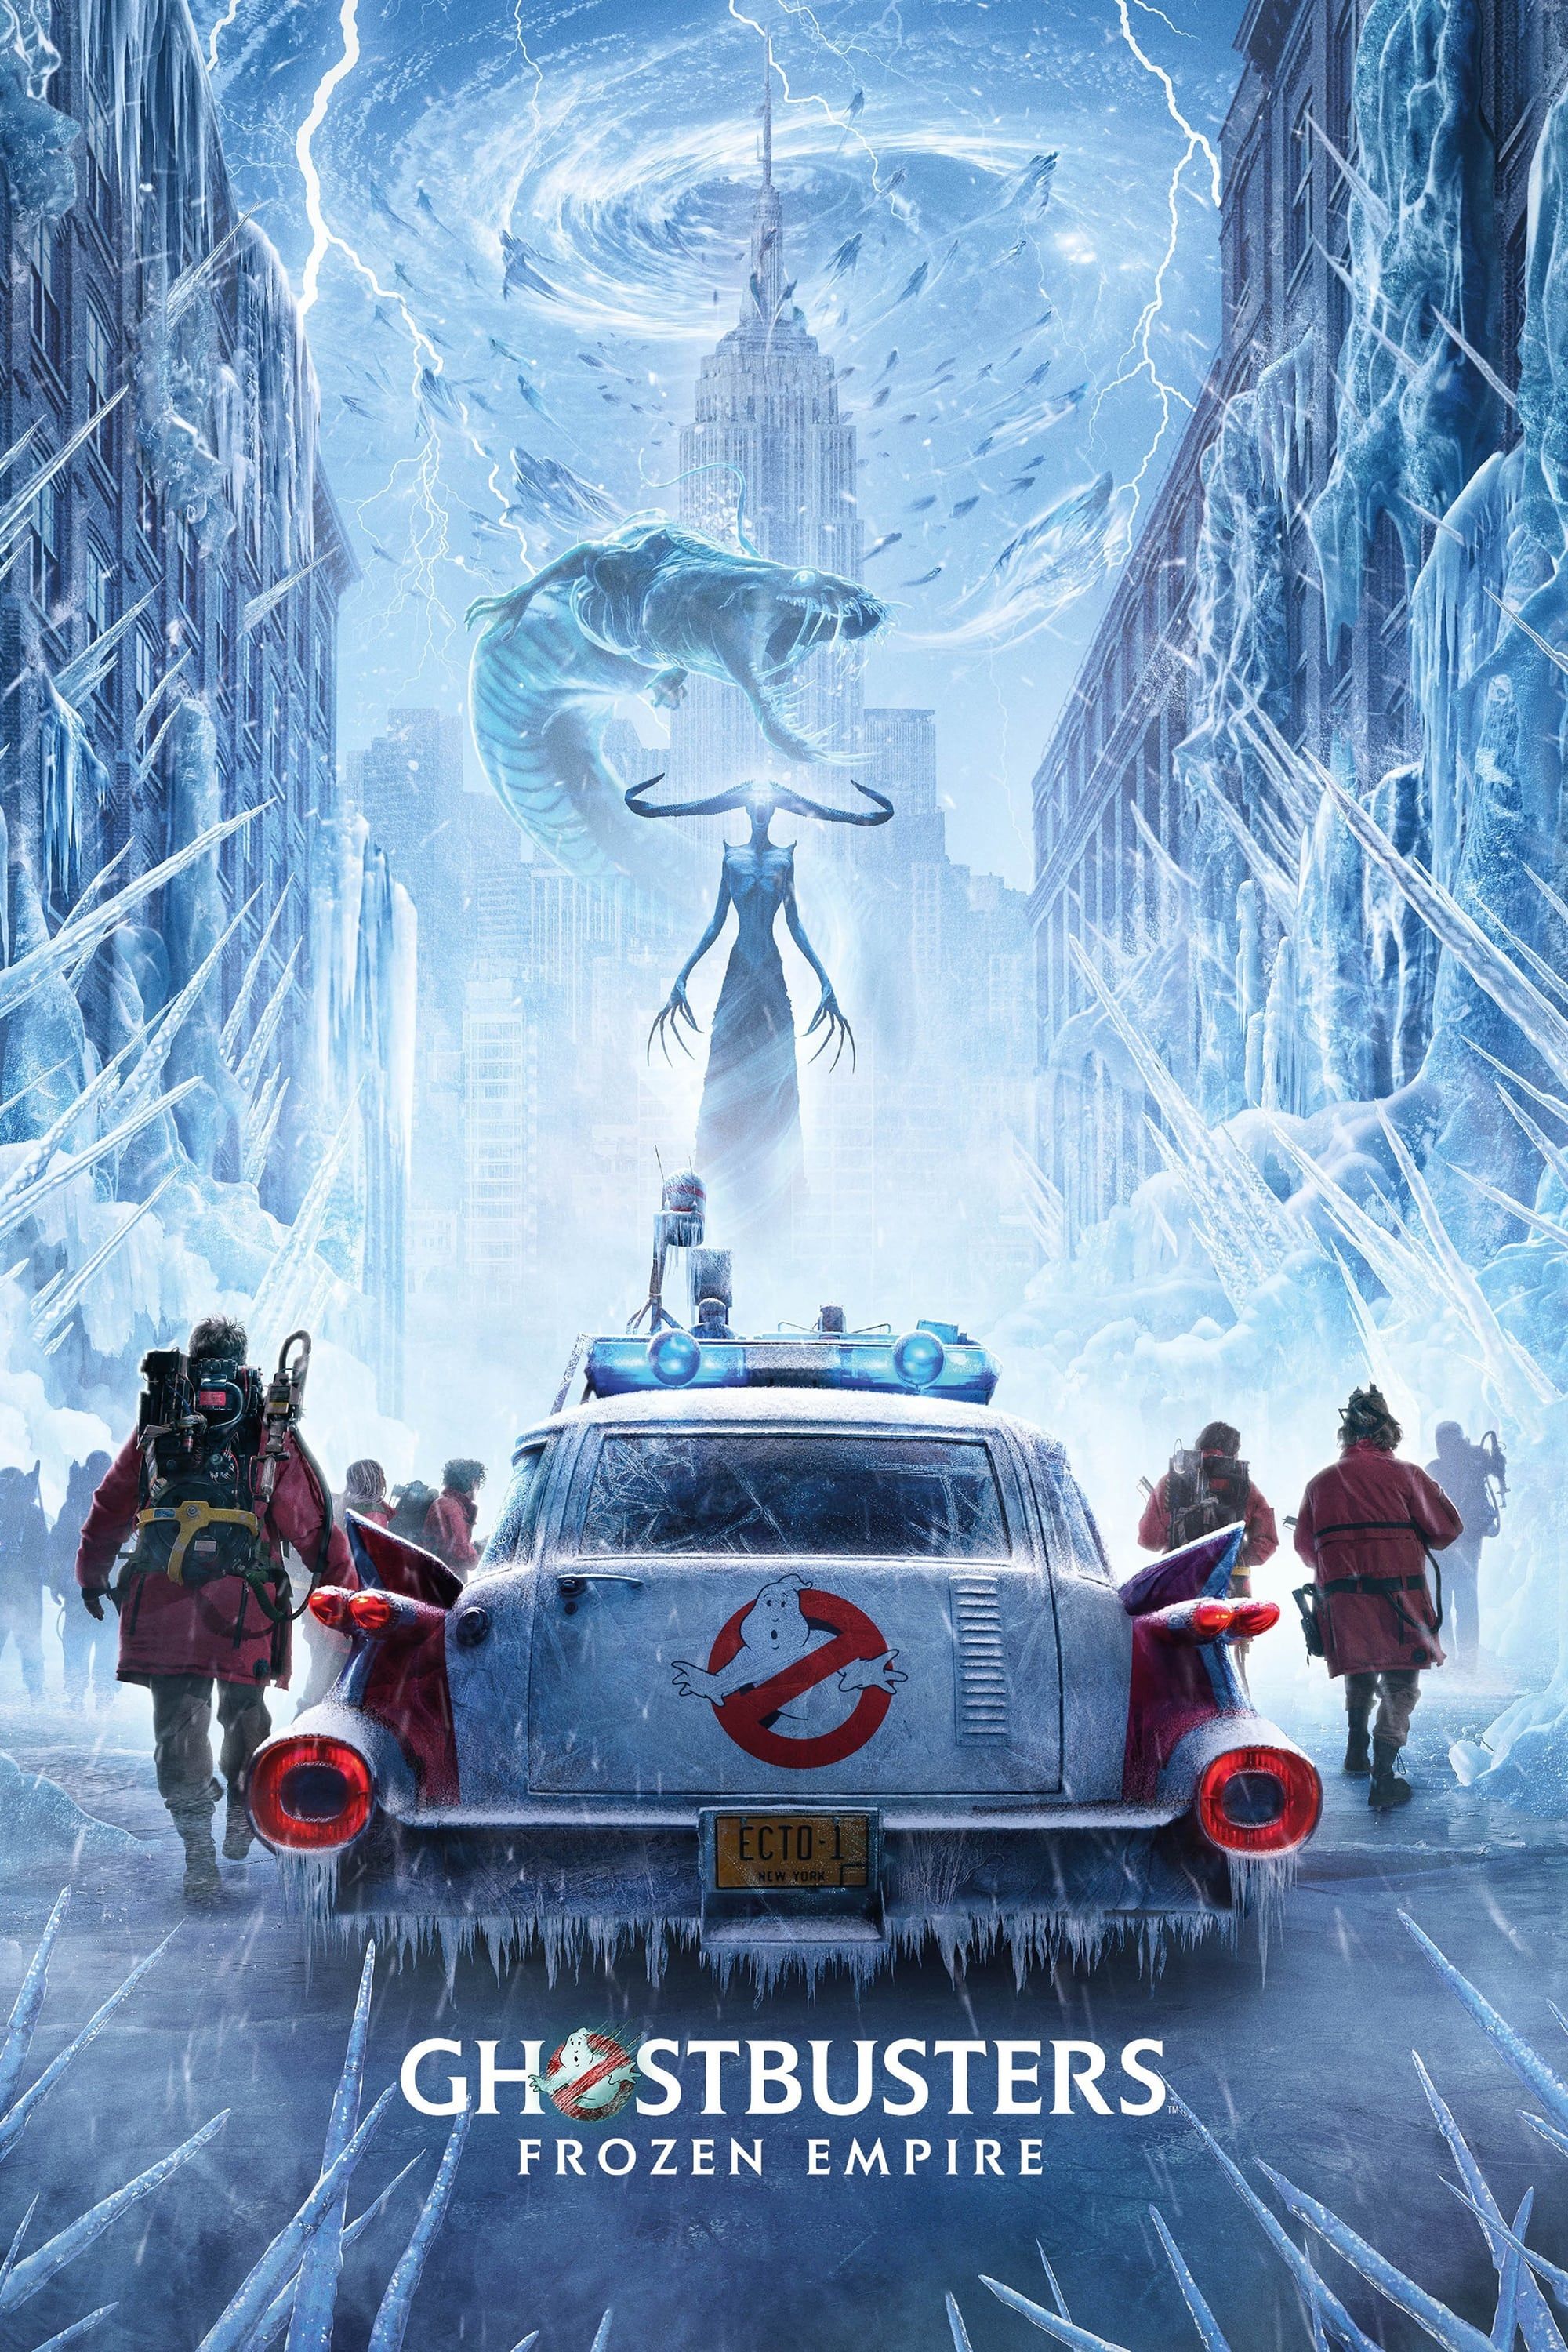 Póster de Los Cazafantasmas Frozen Empire que muestra a la tripulación saliendo del Ecto 1 y enfrentándose a criaturas de hielo en Nueva York